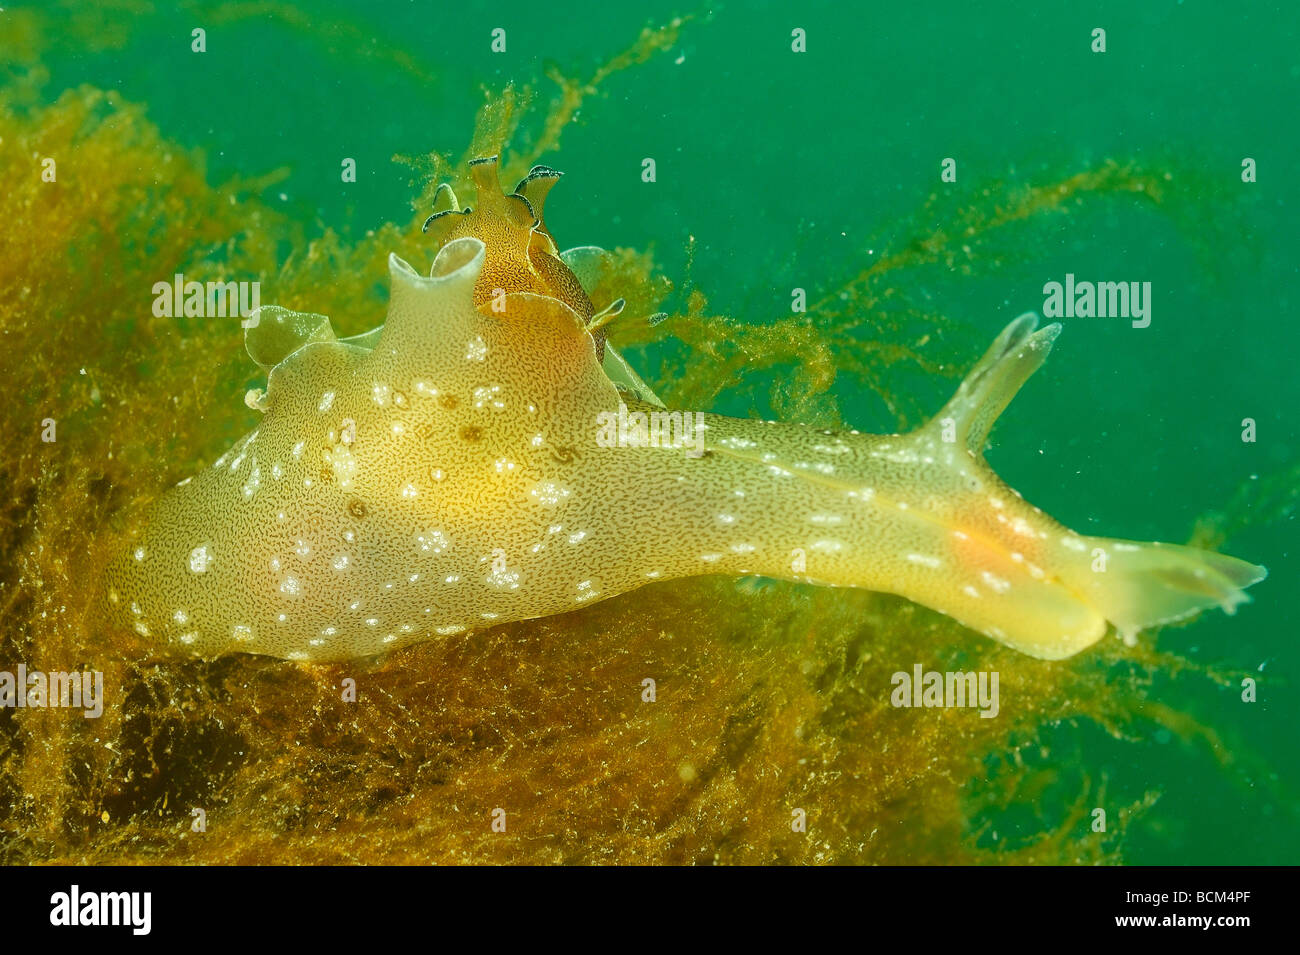 Sea slug in North Brittany Stock Photo